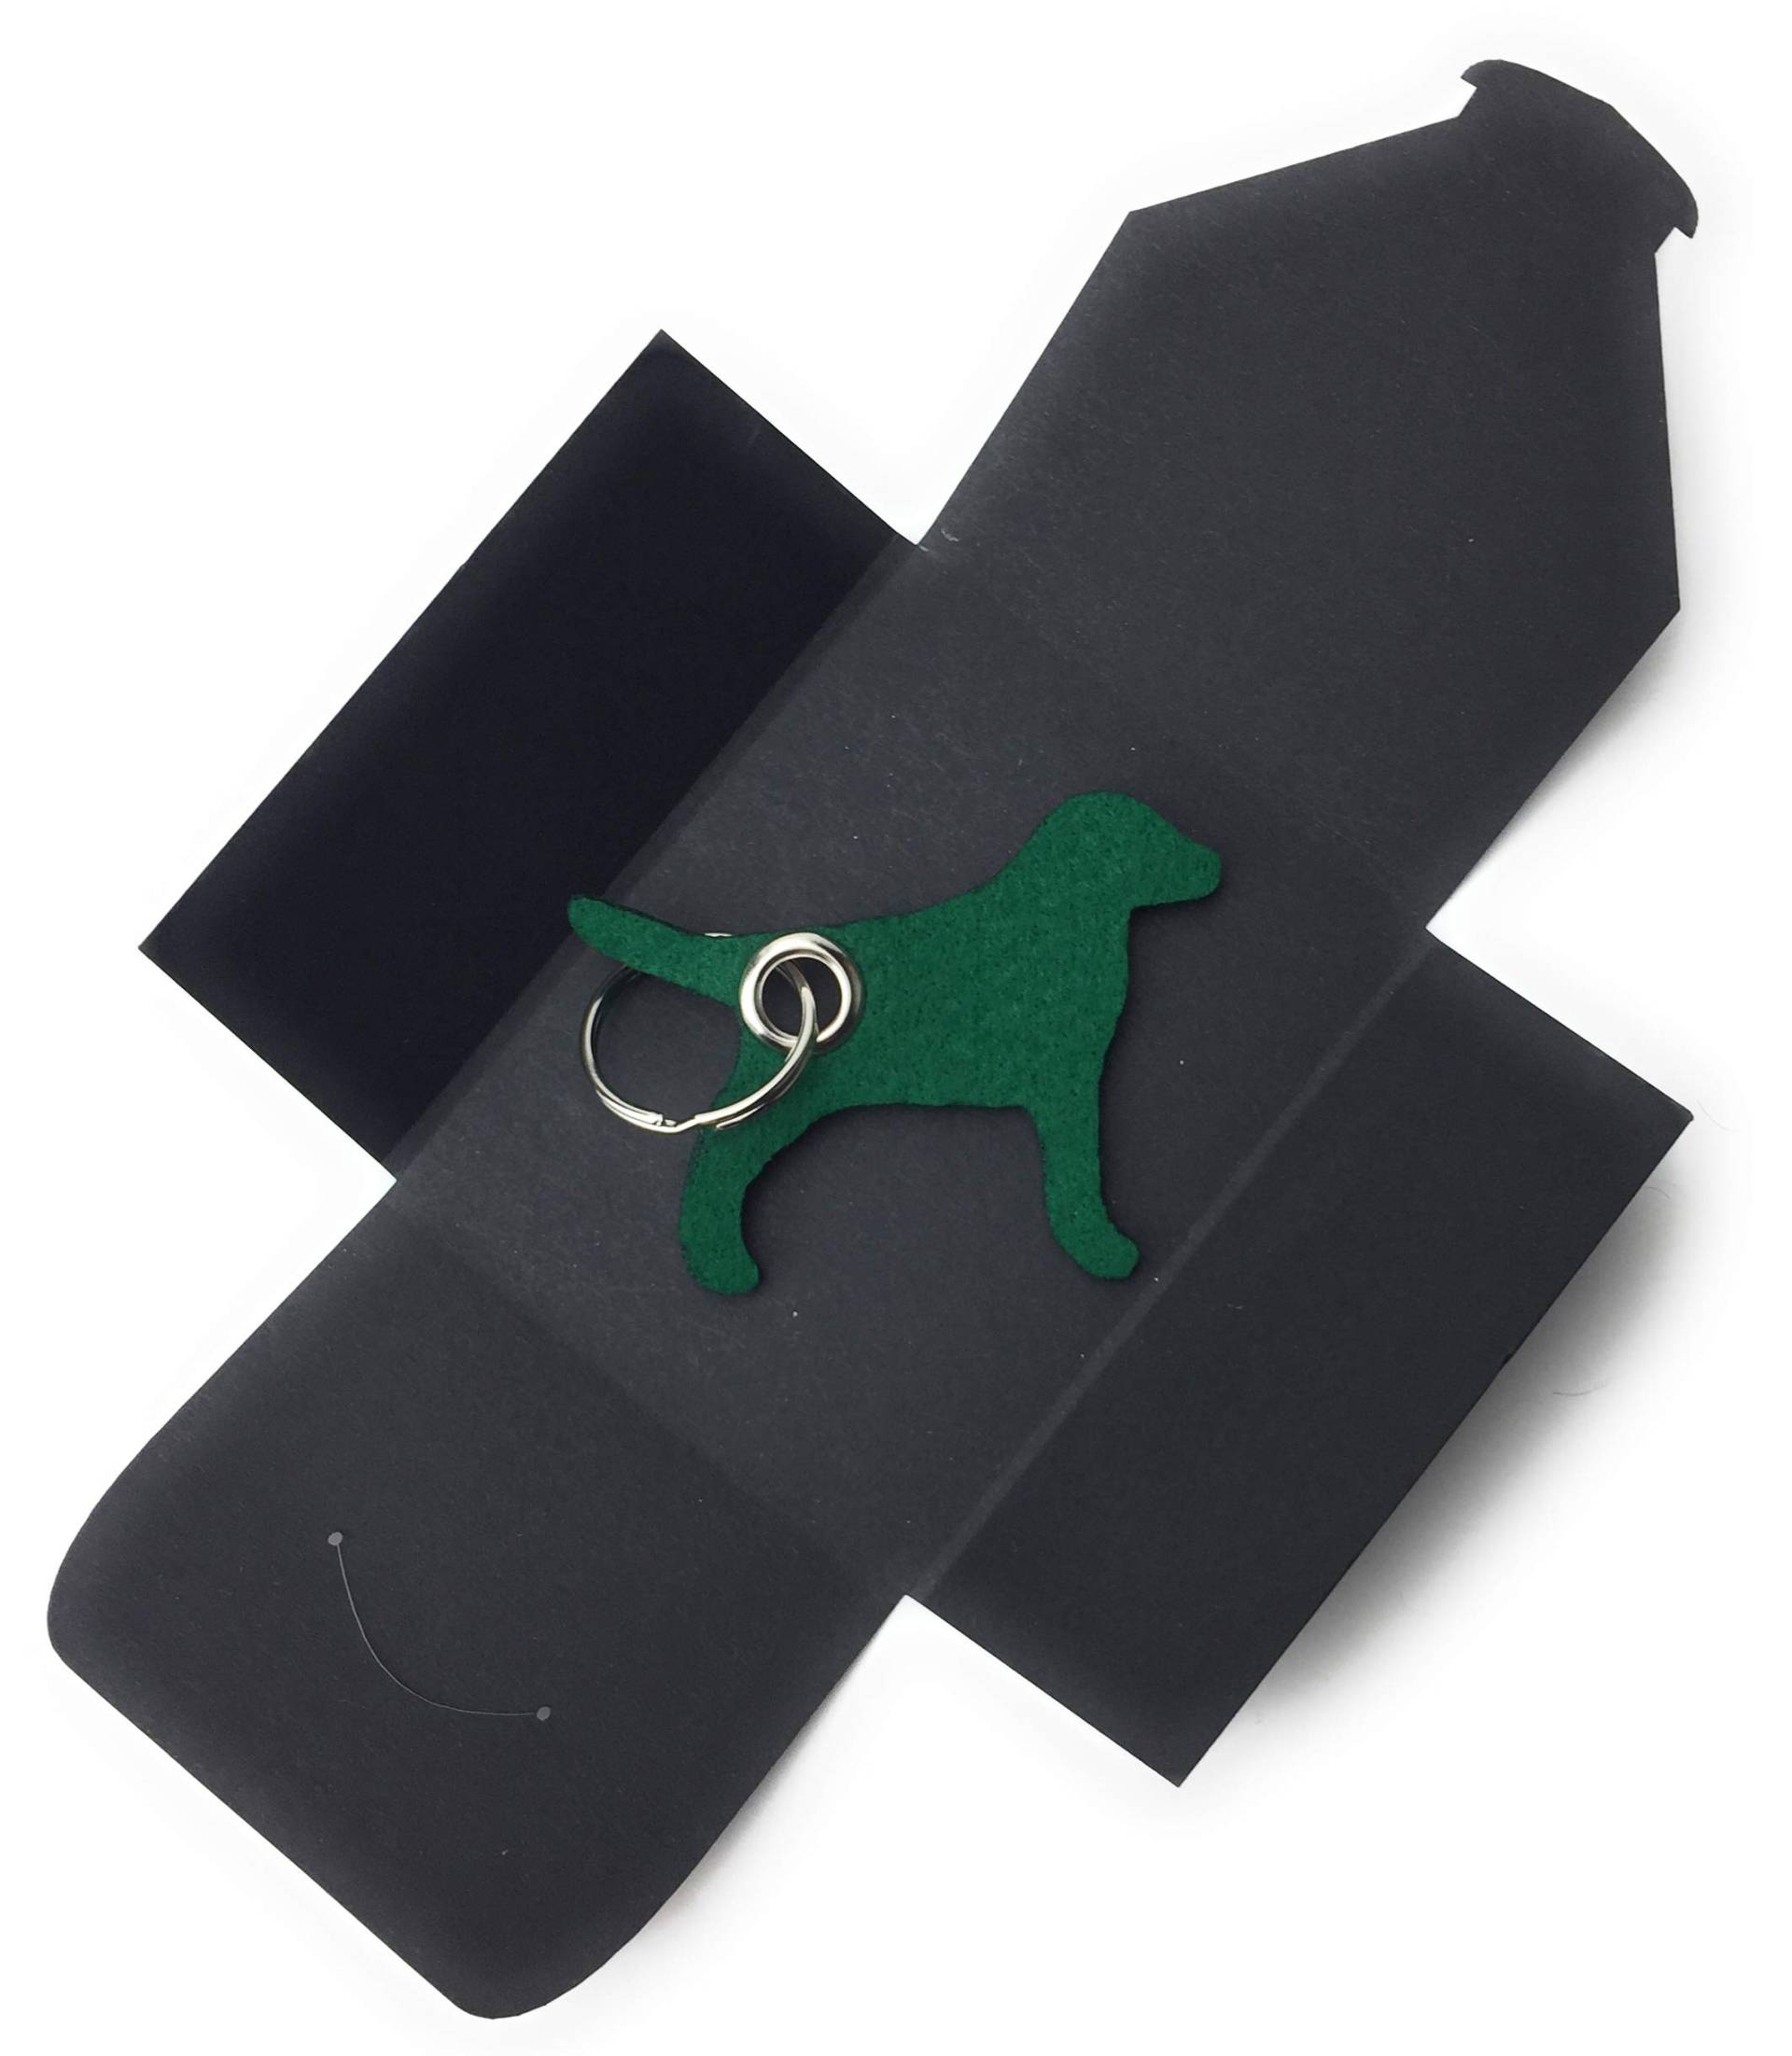 Schlüsselanhänger aus Filz - Hund/Tier - dunkel-grün - als besonderes Geschenk von filzschneider